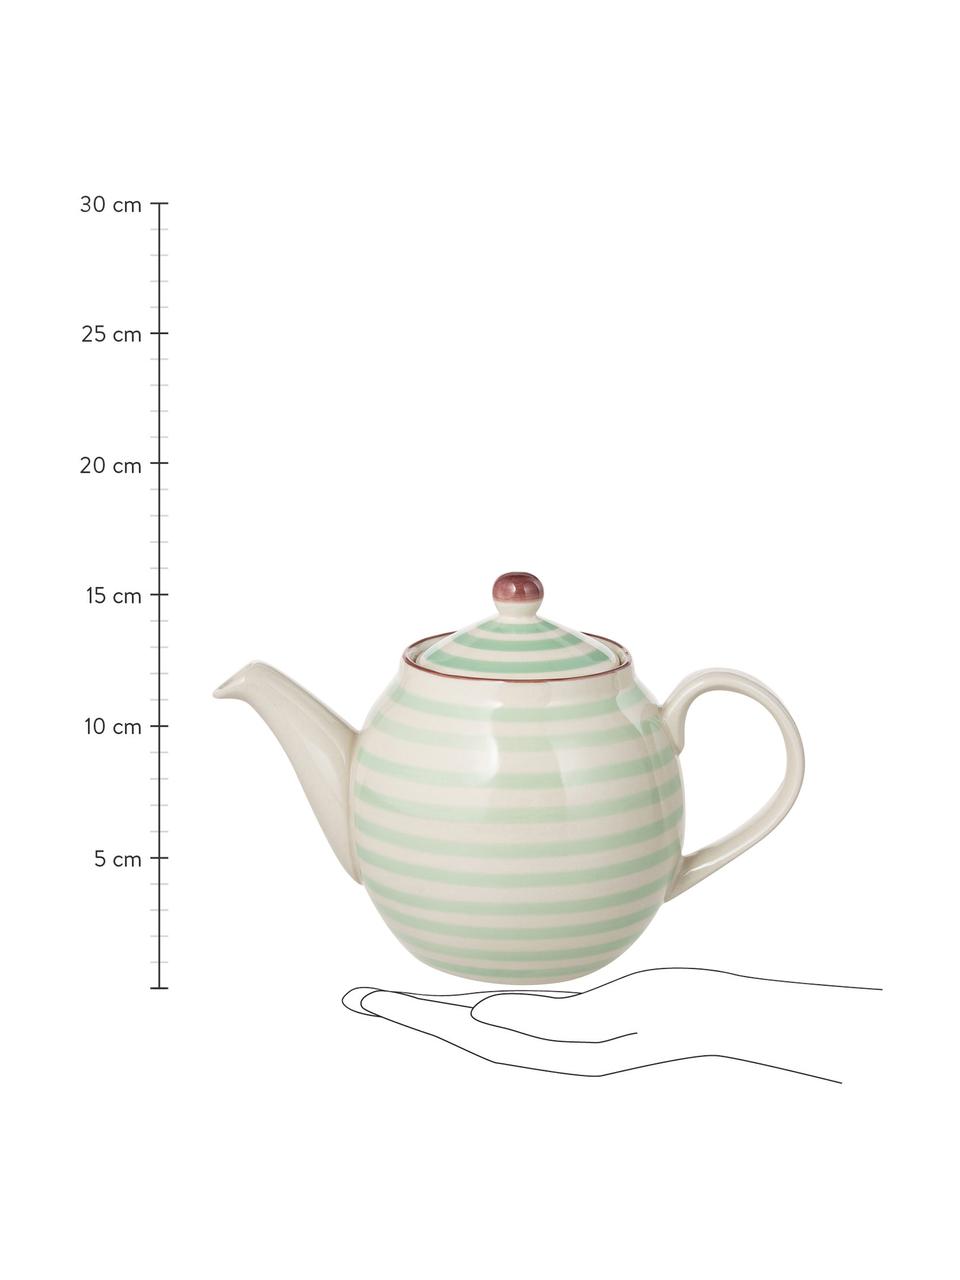 Handbemalte Teekanne Patrizia mit verspieltem Muster, 1.2 L, Steingut, Grün, Gebrochenes Weiß, 1.2 L